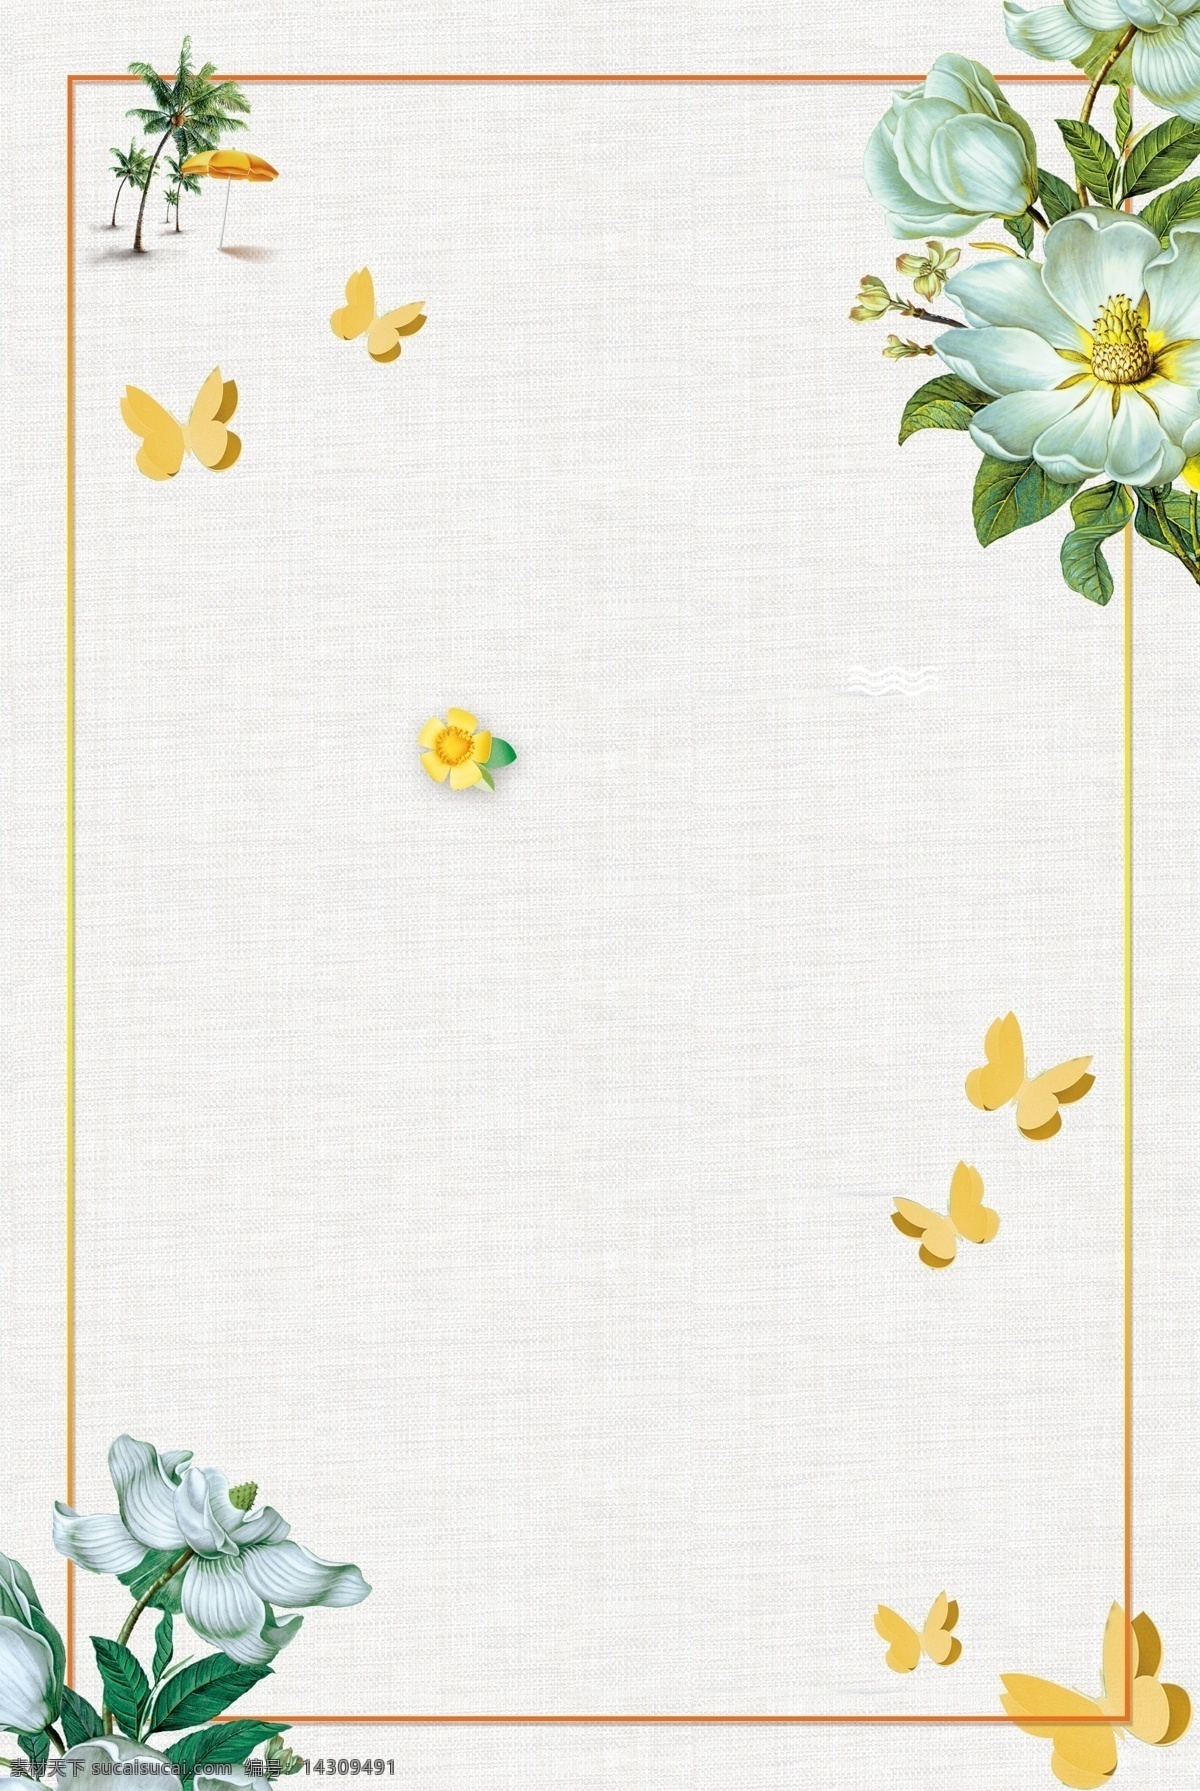 绿色 花朵 花卉 边框 蝴蝶 绿色花朵 绿色花卉 手绘花朵 手绘花 花边边框 花边素材 共享图